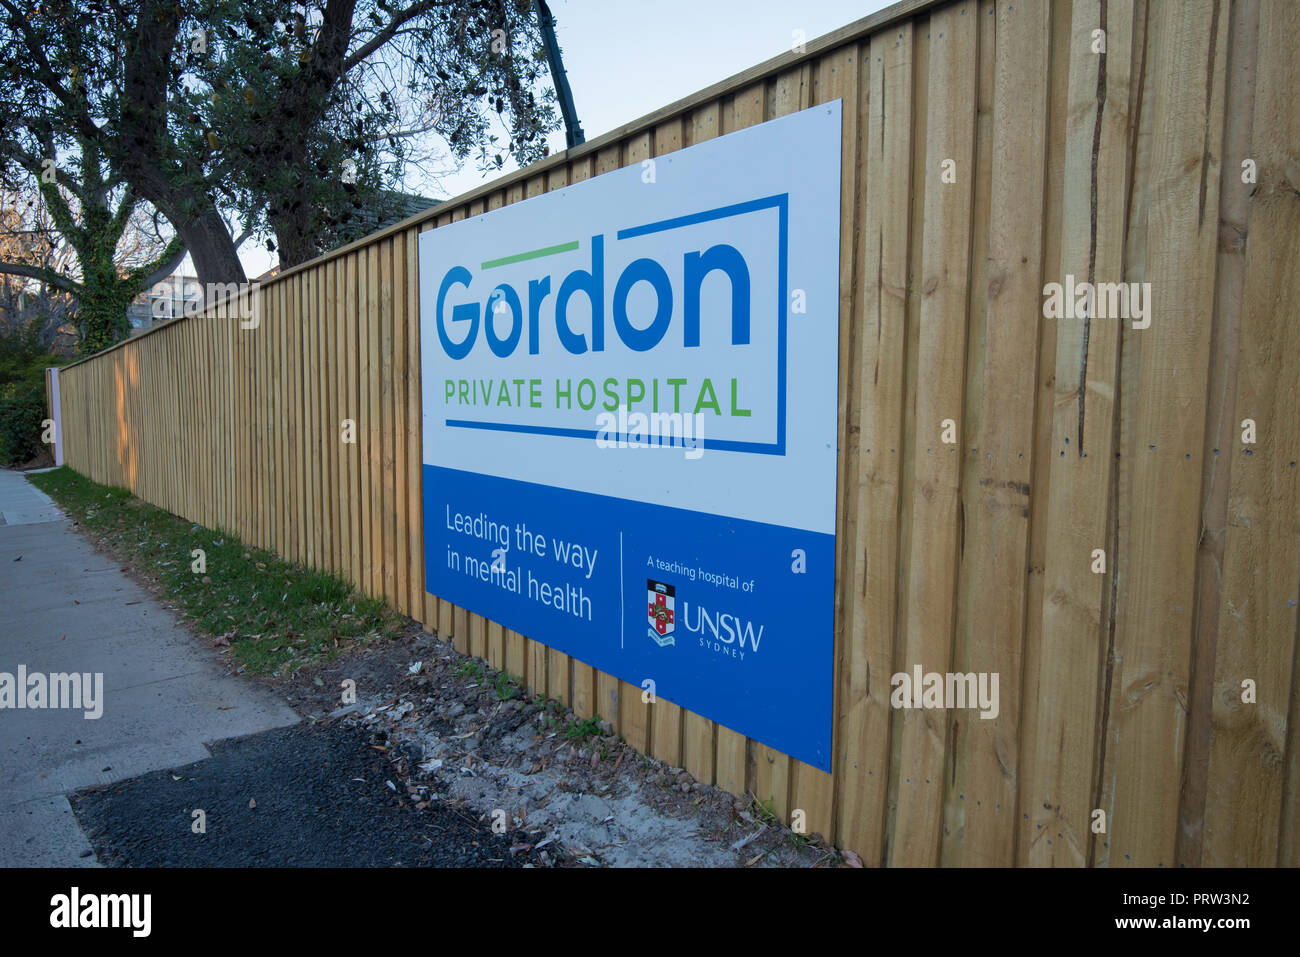 Aperto nel 2018, il Gordon ospedale privato è una salute mentale azienda ospedaliera affiliata con l'Università di New South Wales in Australia Foto Stock